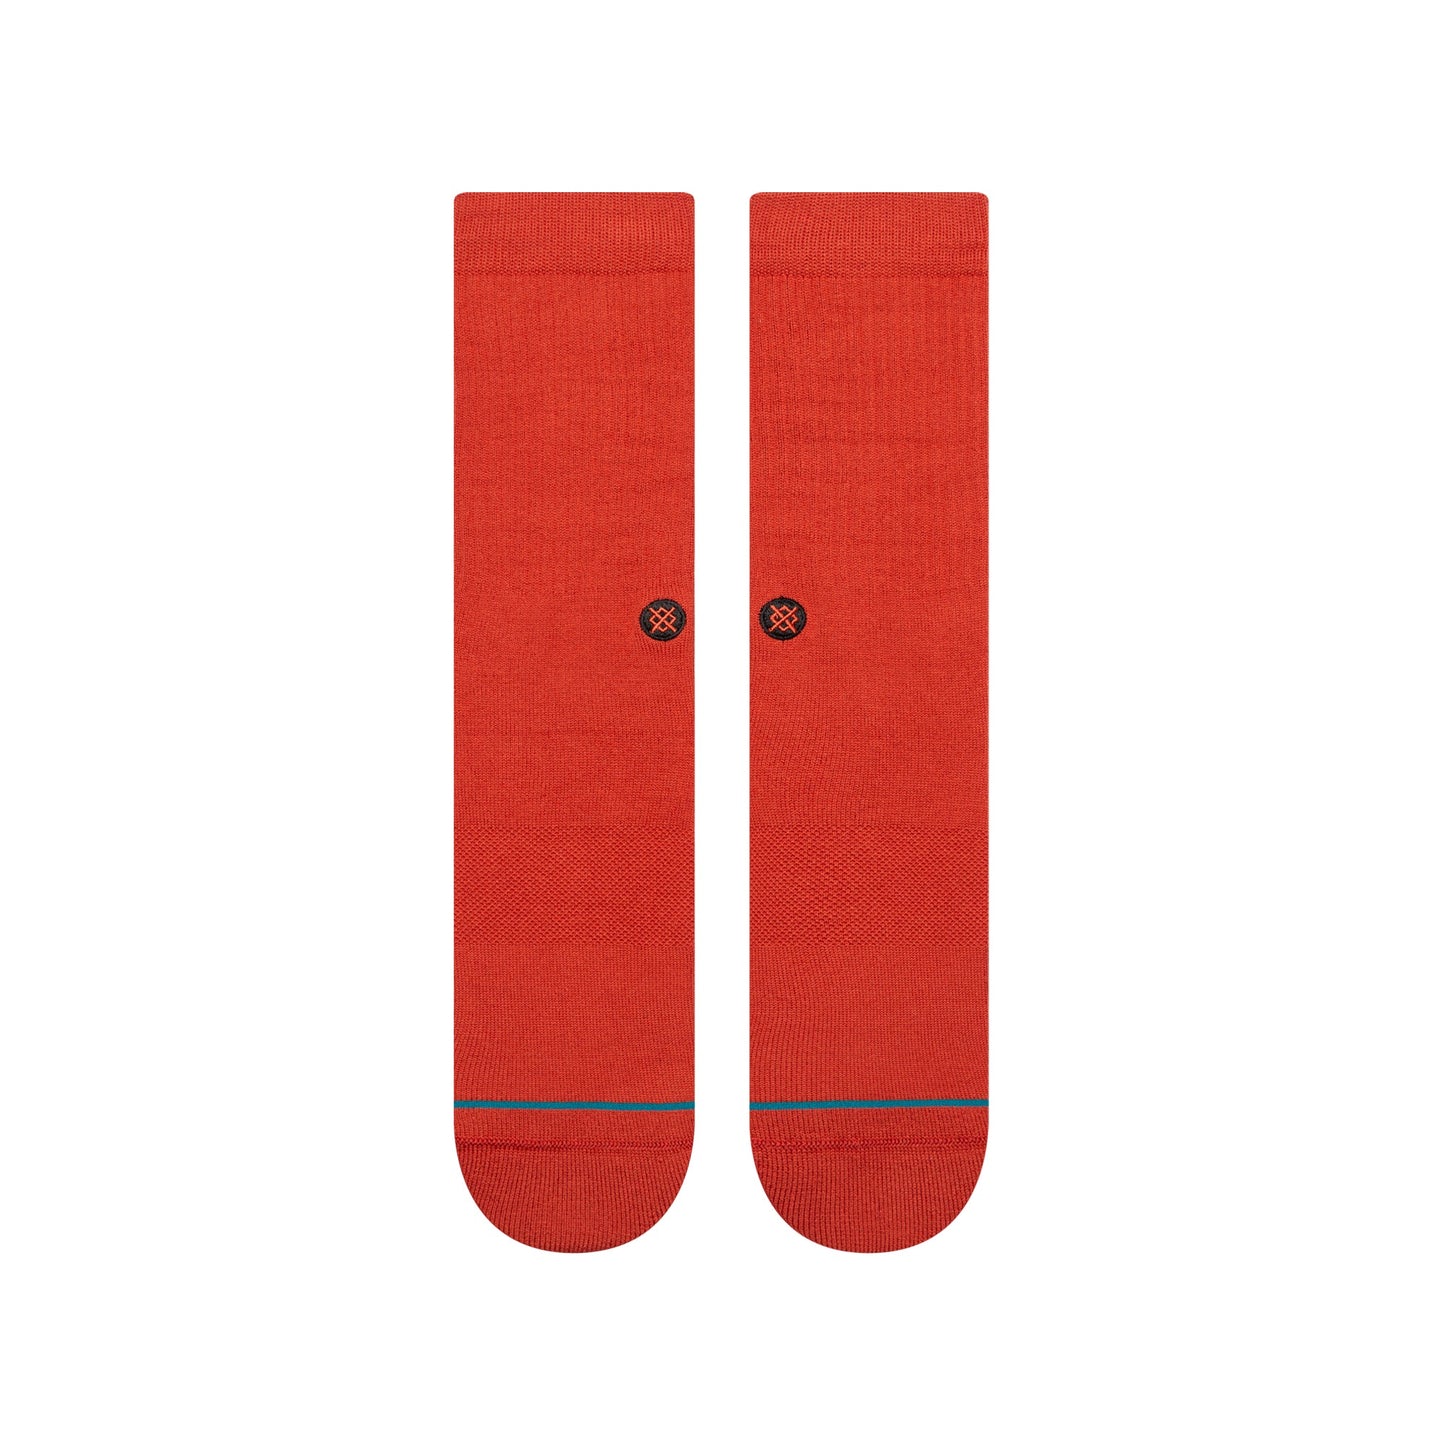 Chaussettes mi-mollet rouge foncé Icon de Stance